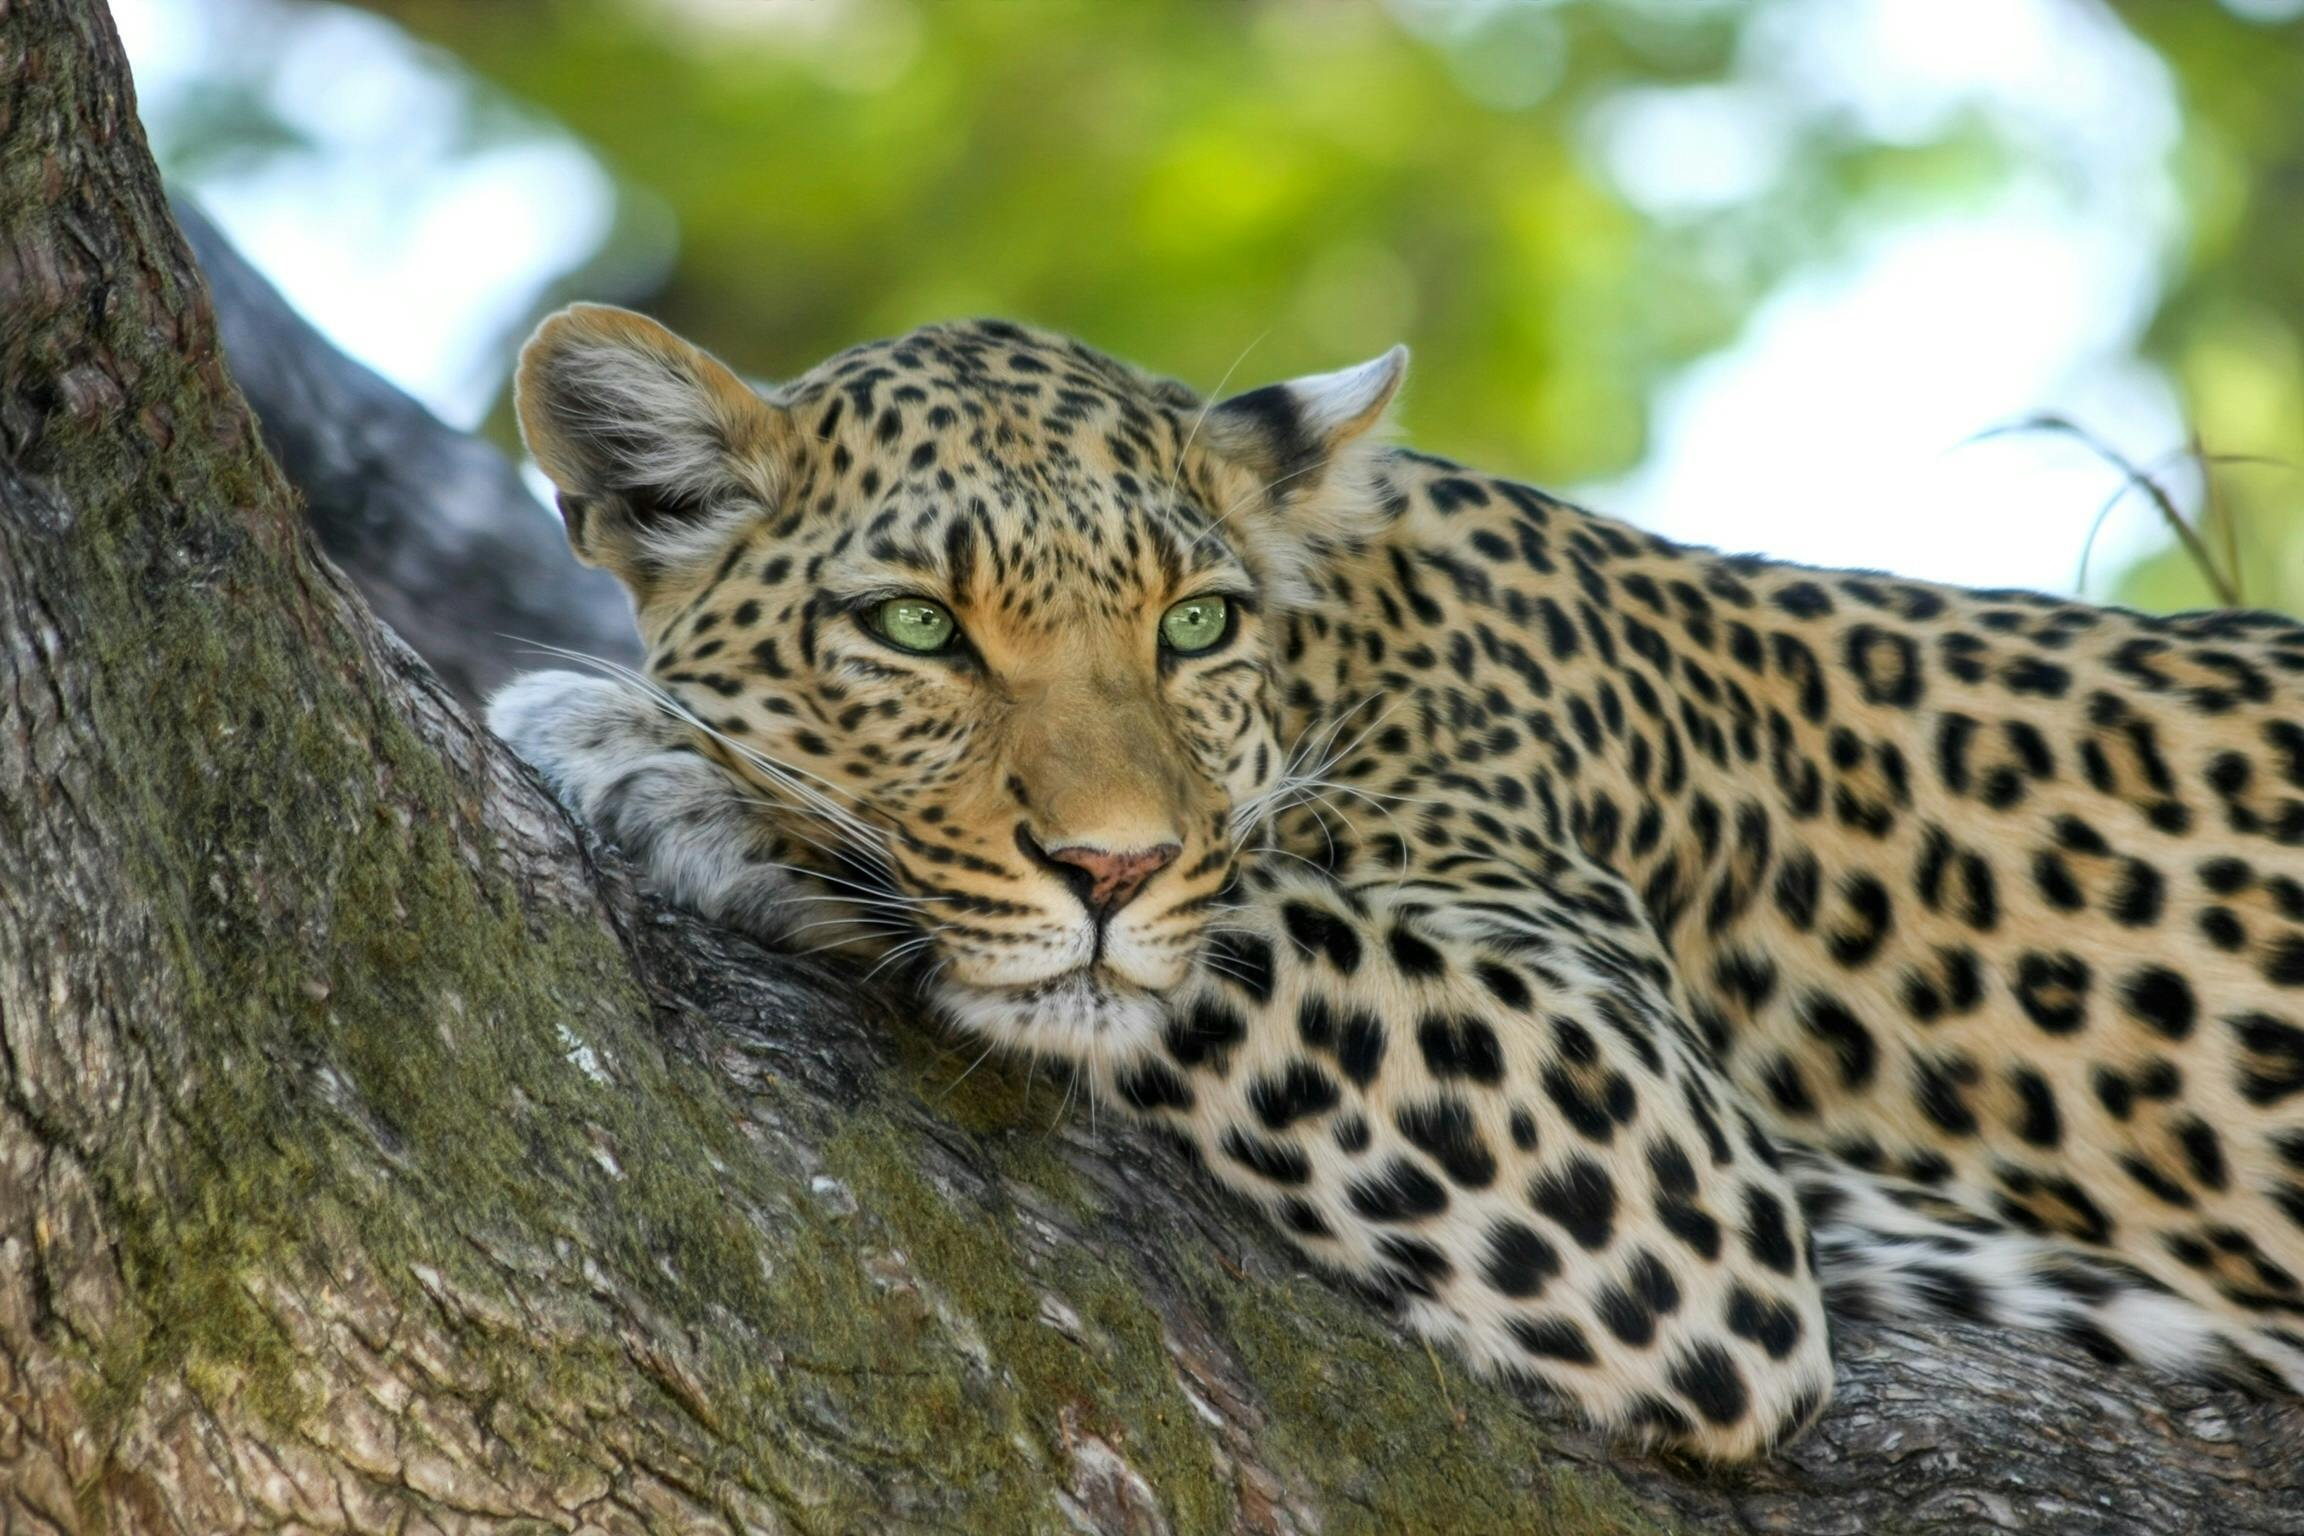 Wild Animals Photos, Download The BEST Free Wild Animals Stock